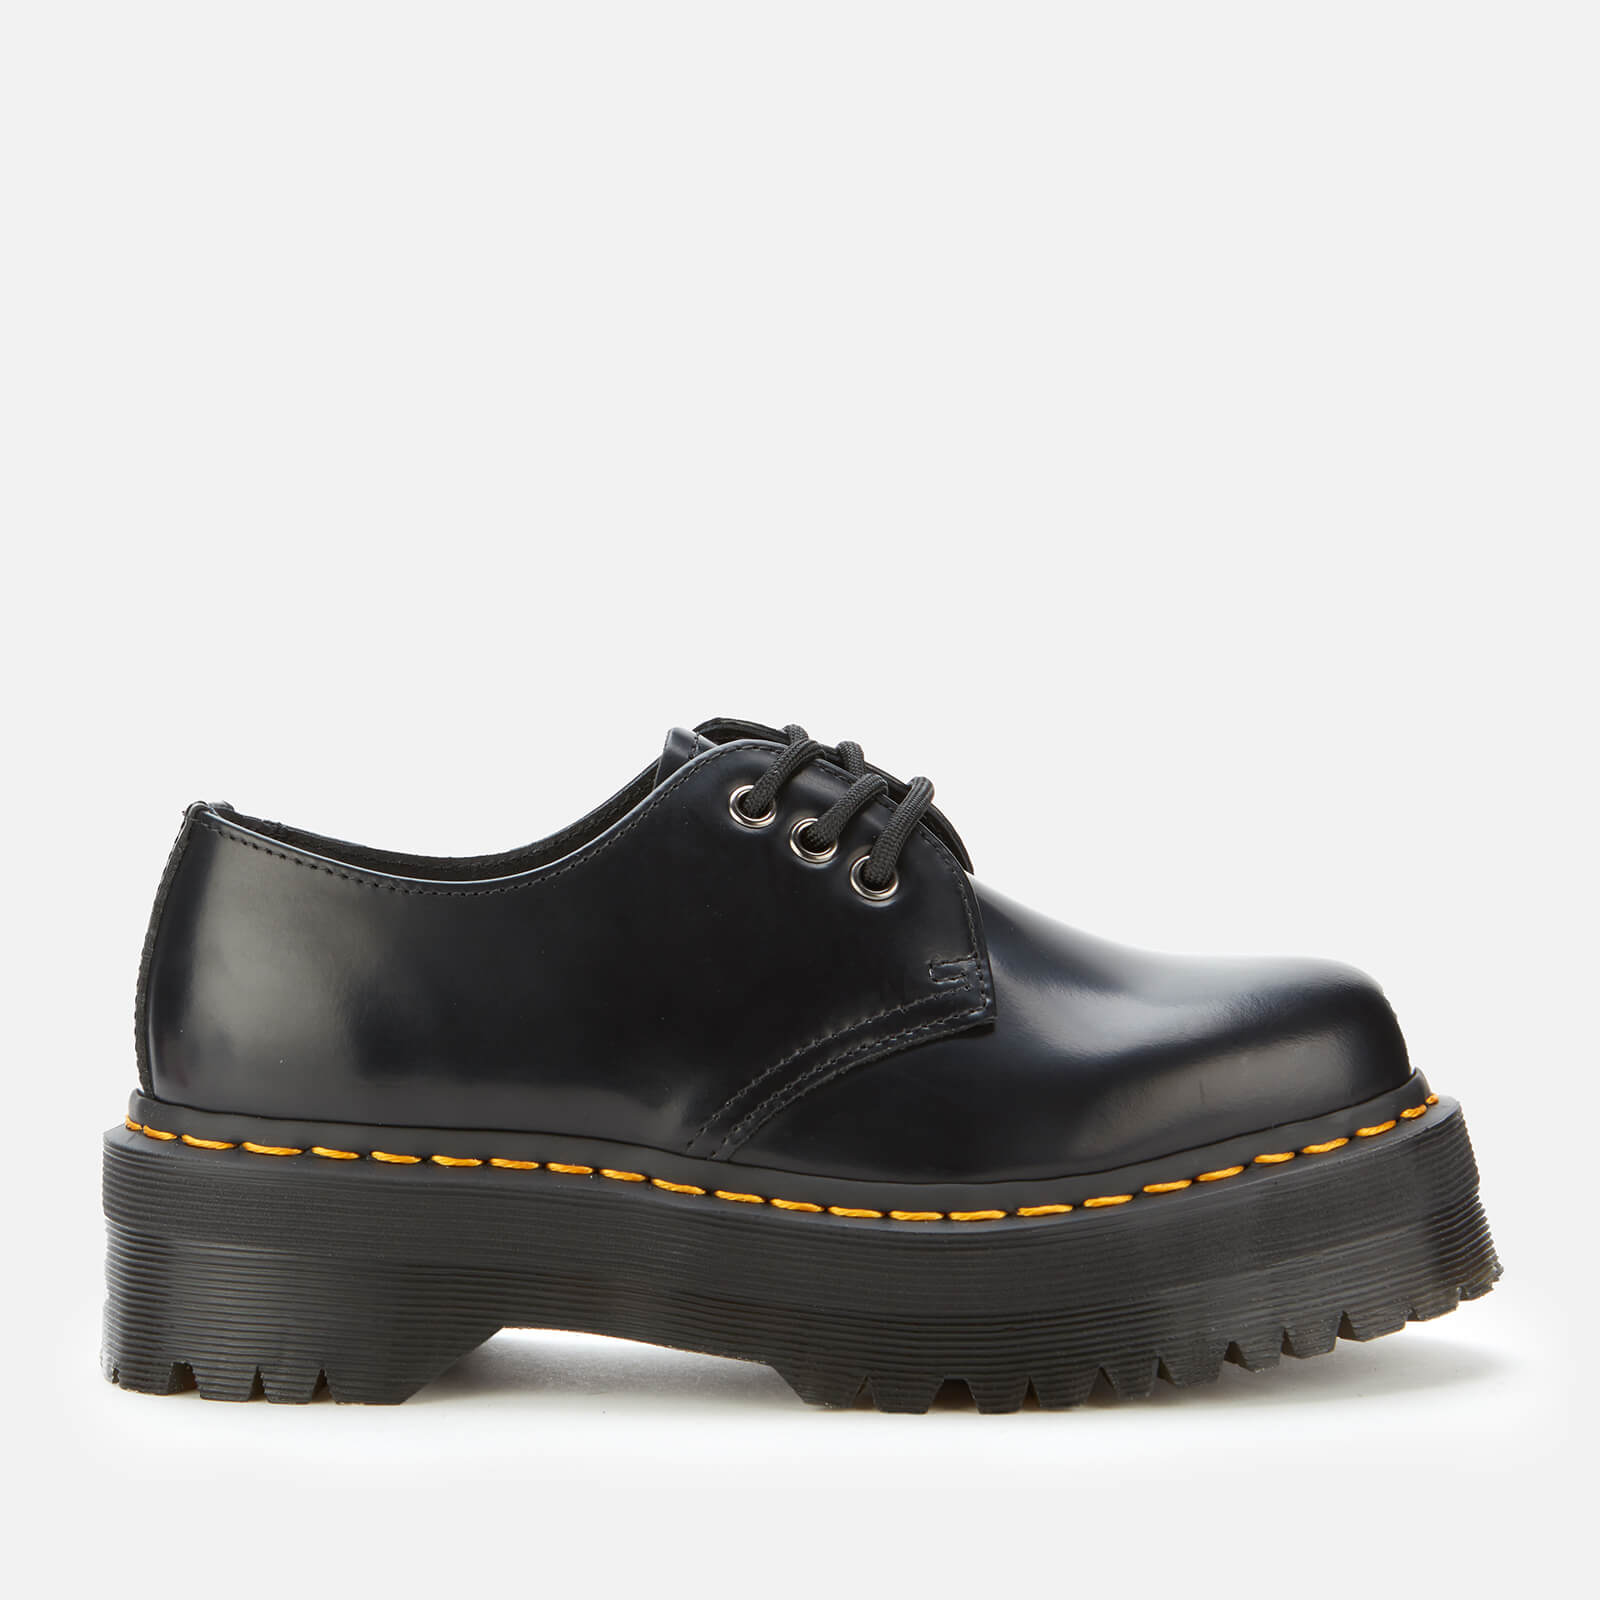 Dr. Martens 1461 Quad Leather 3-Eye Shoes - Black - UK 3